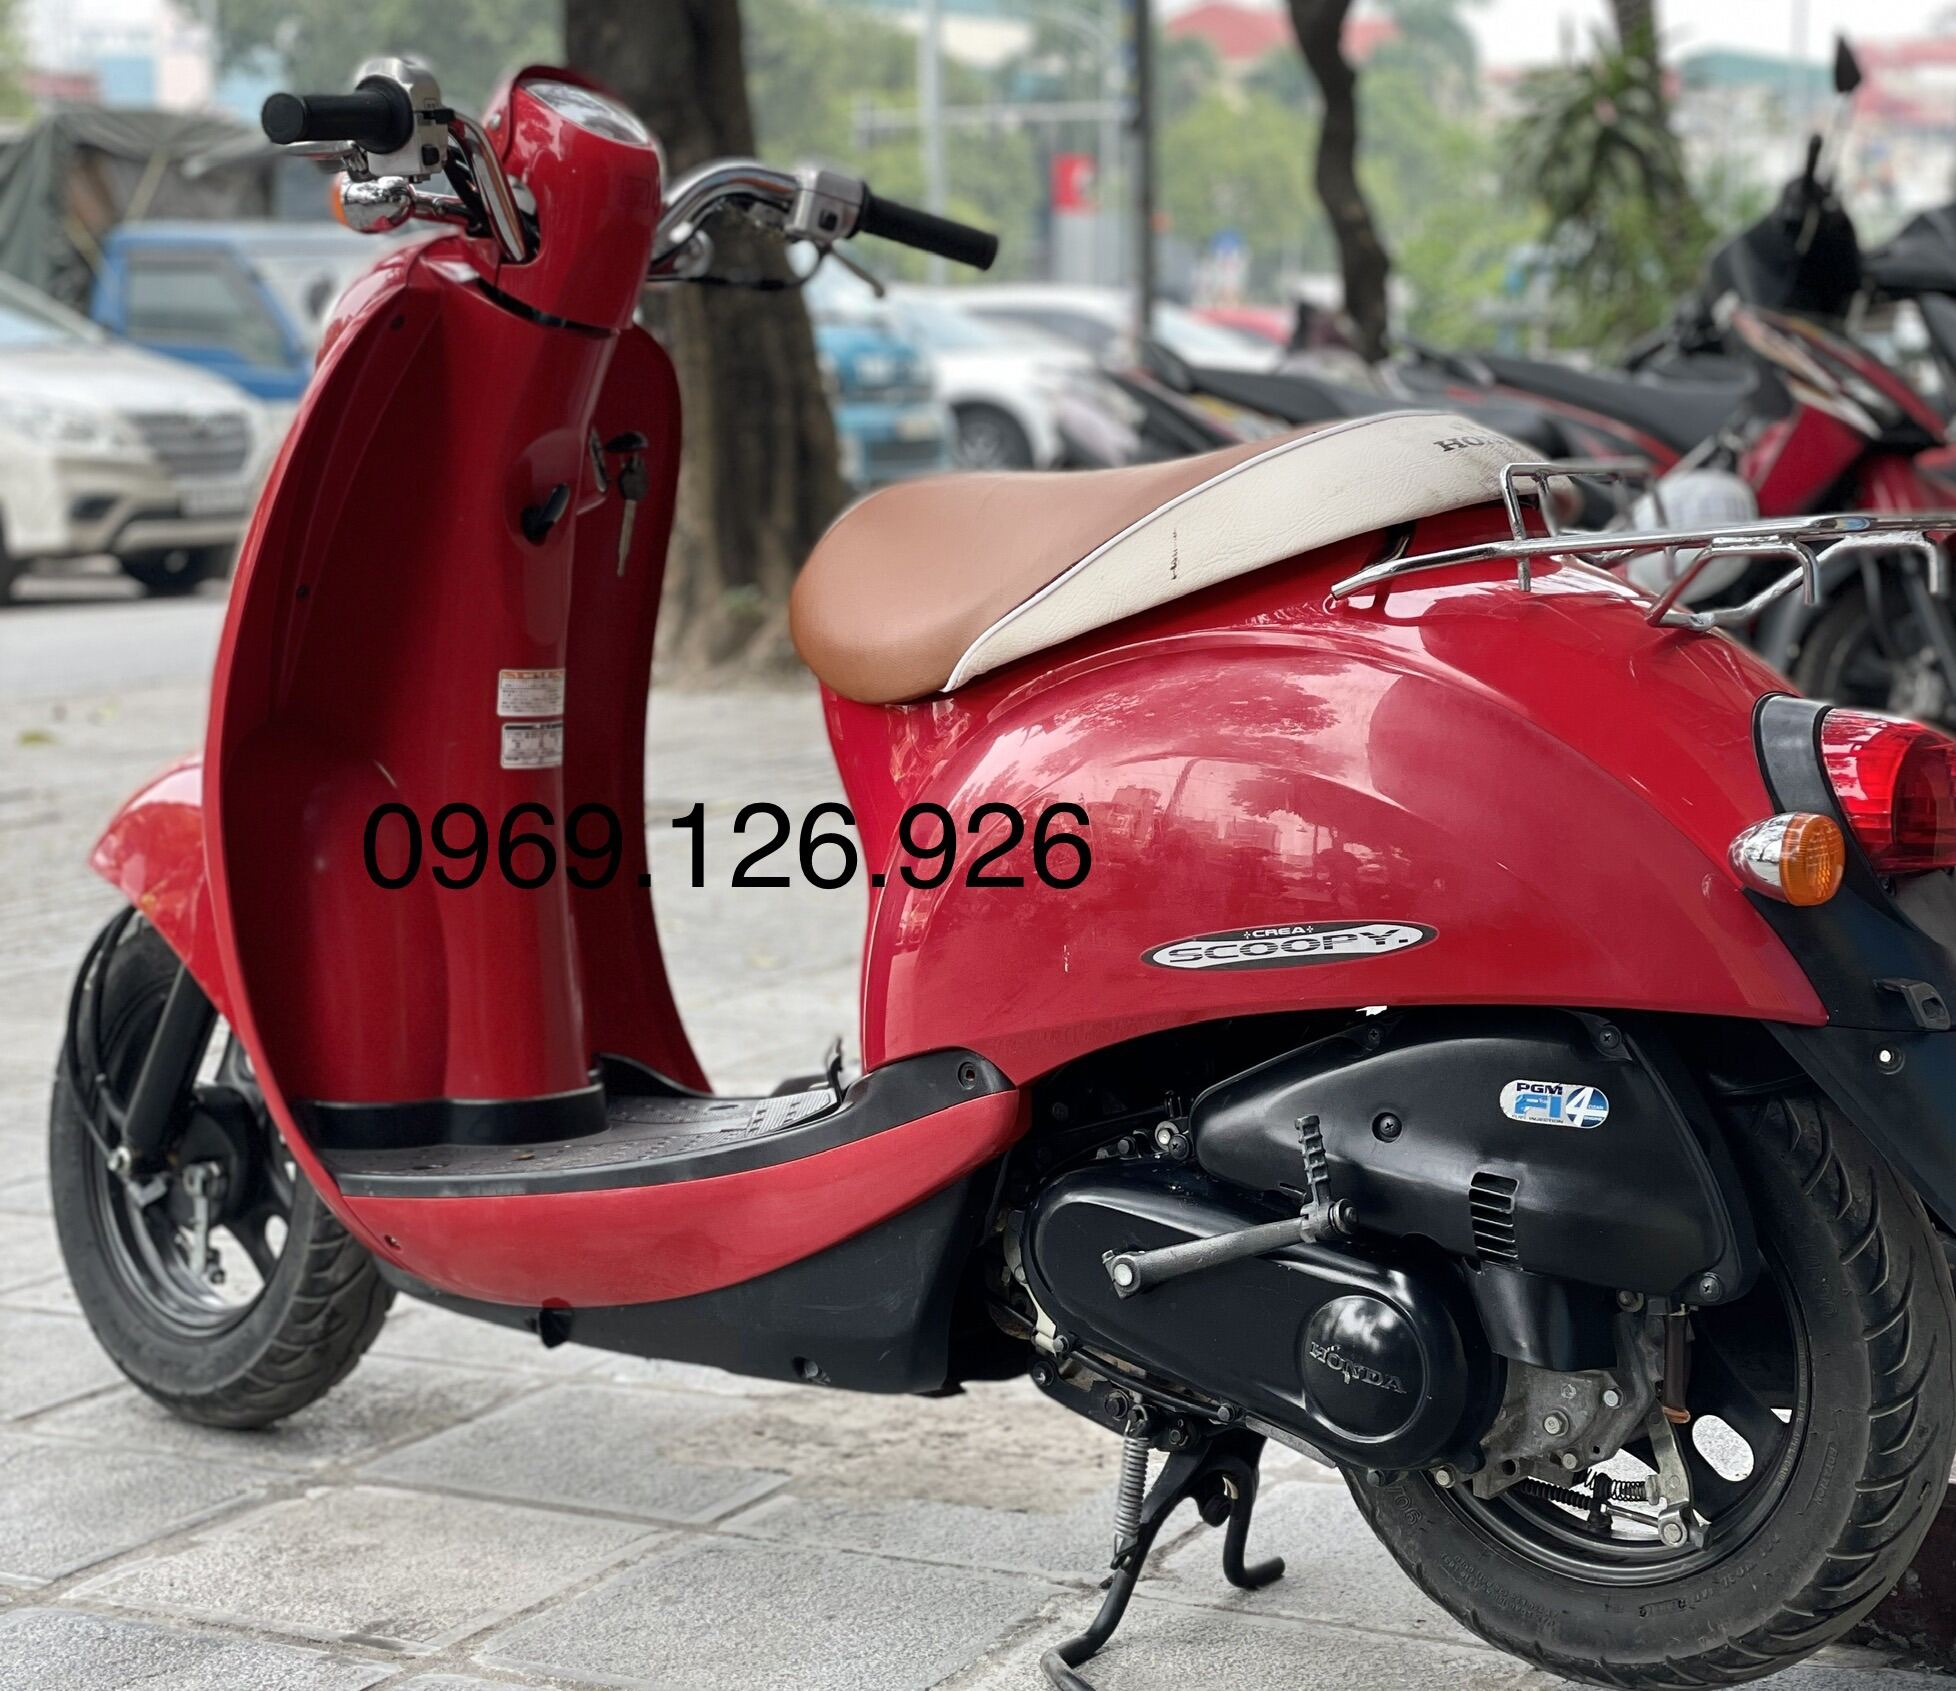 Honda Scoopy 2018 có mấy màu giá bao nhiêu tại thị trường Việt   MuasamXecom